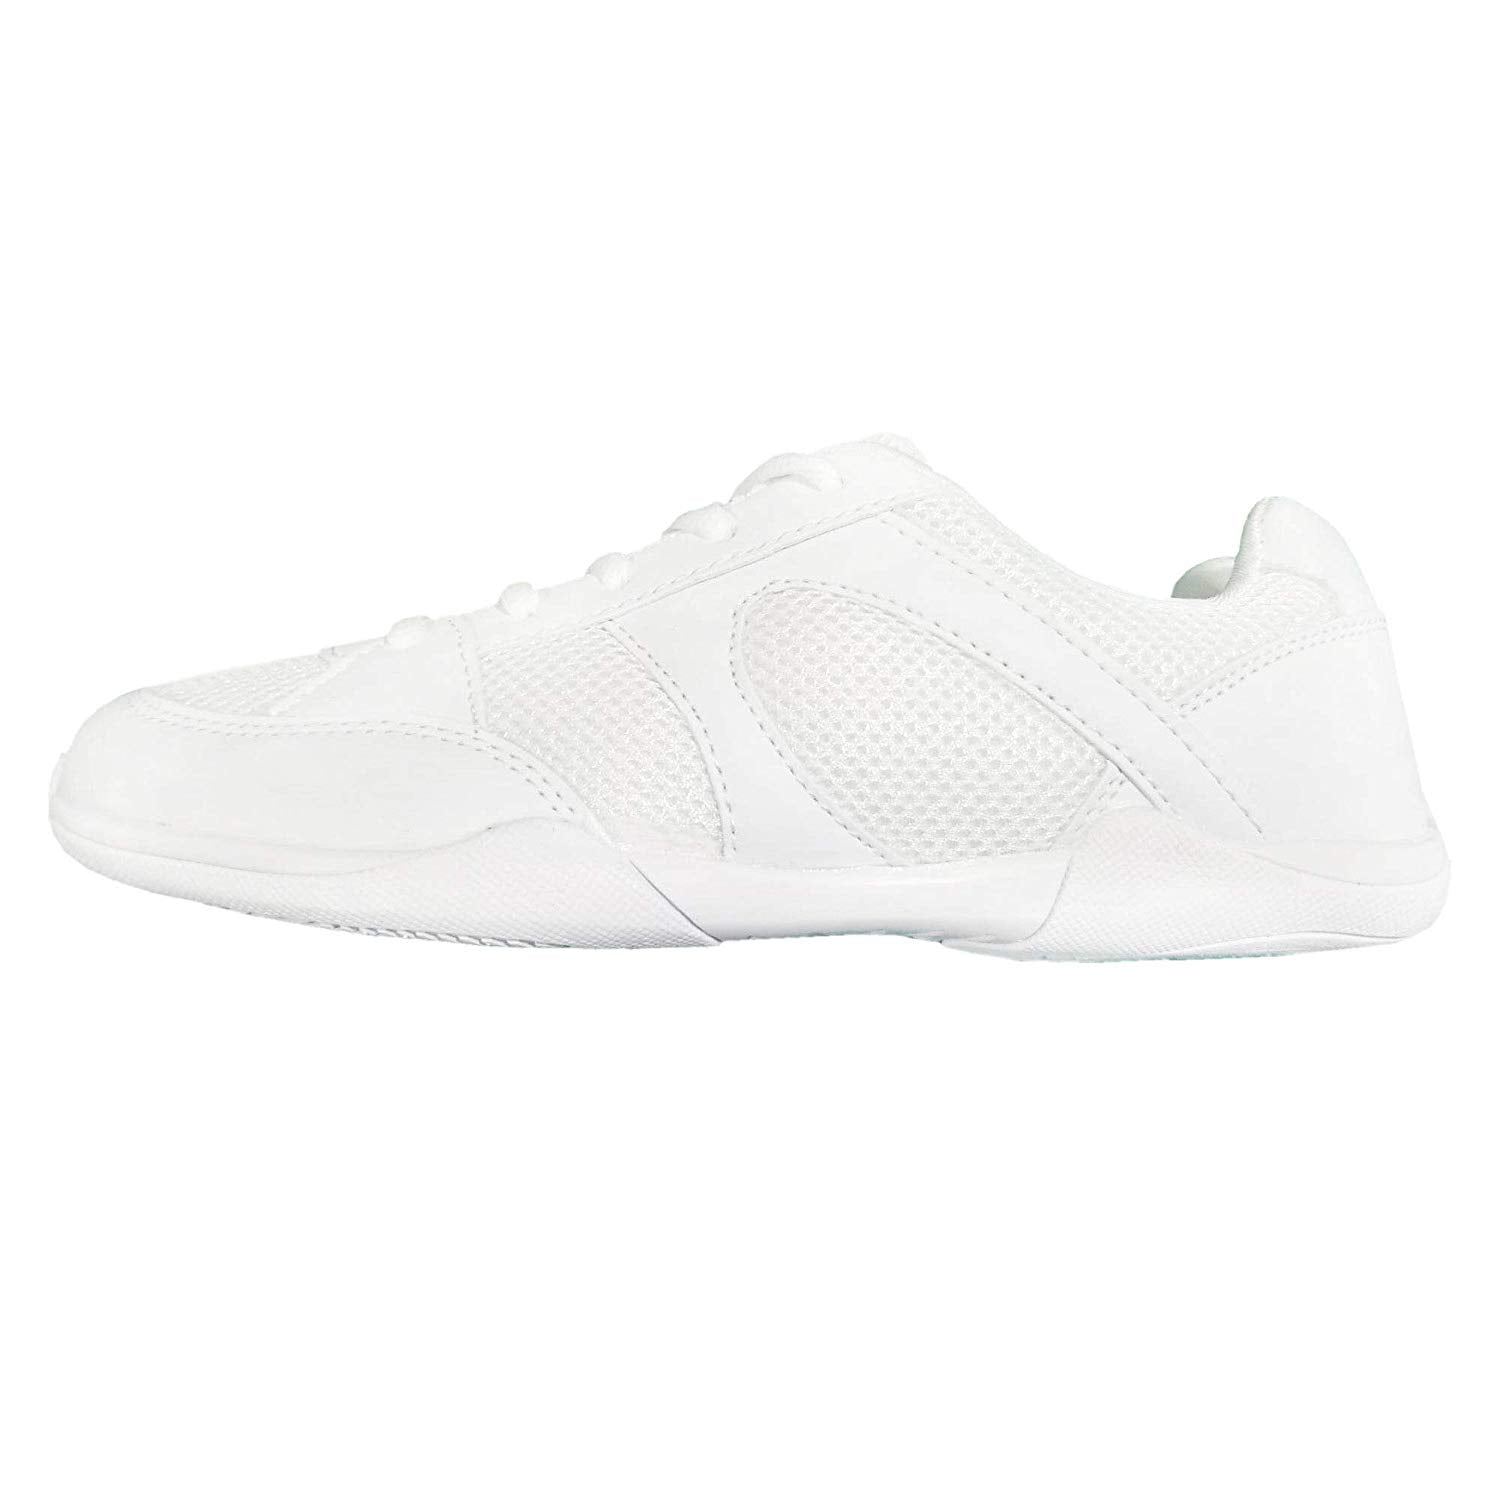 Danzcue Aurora Cheer Shoes, White, Size 